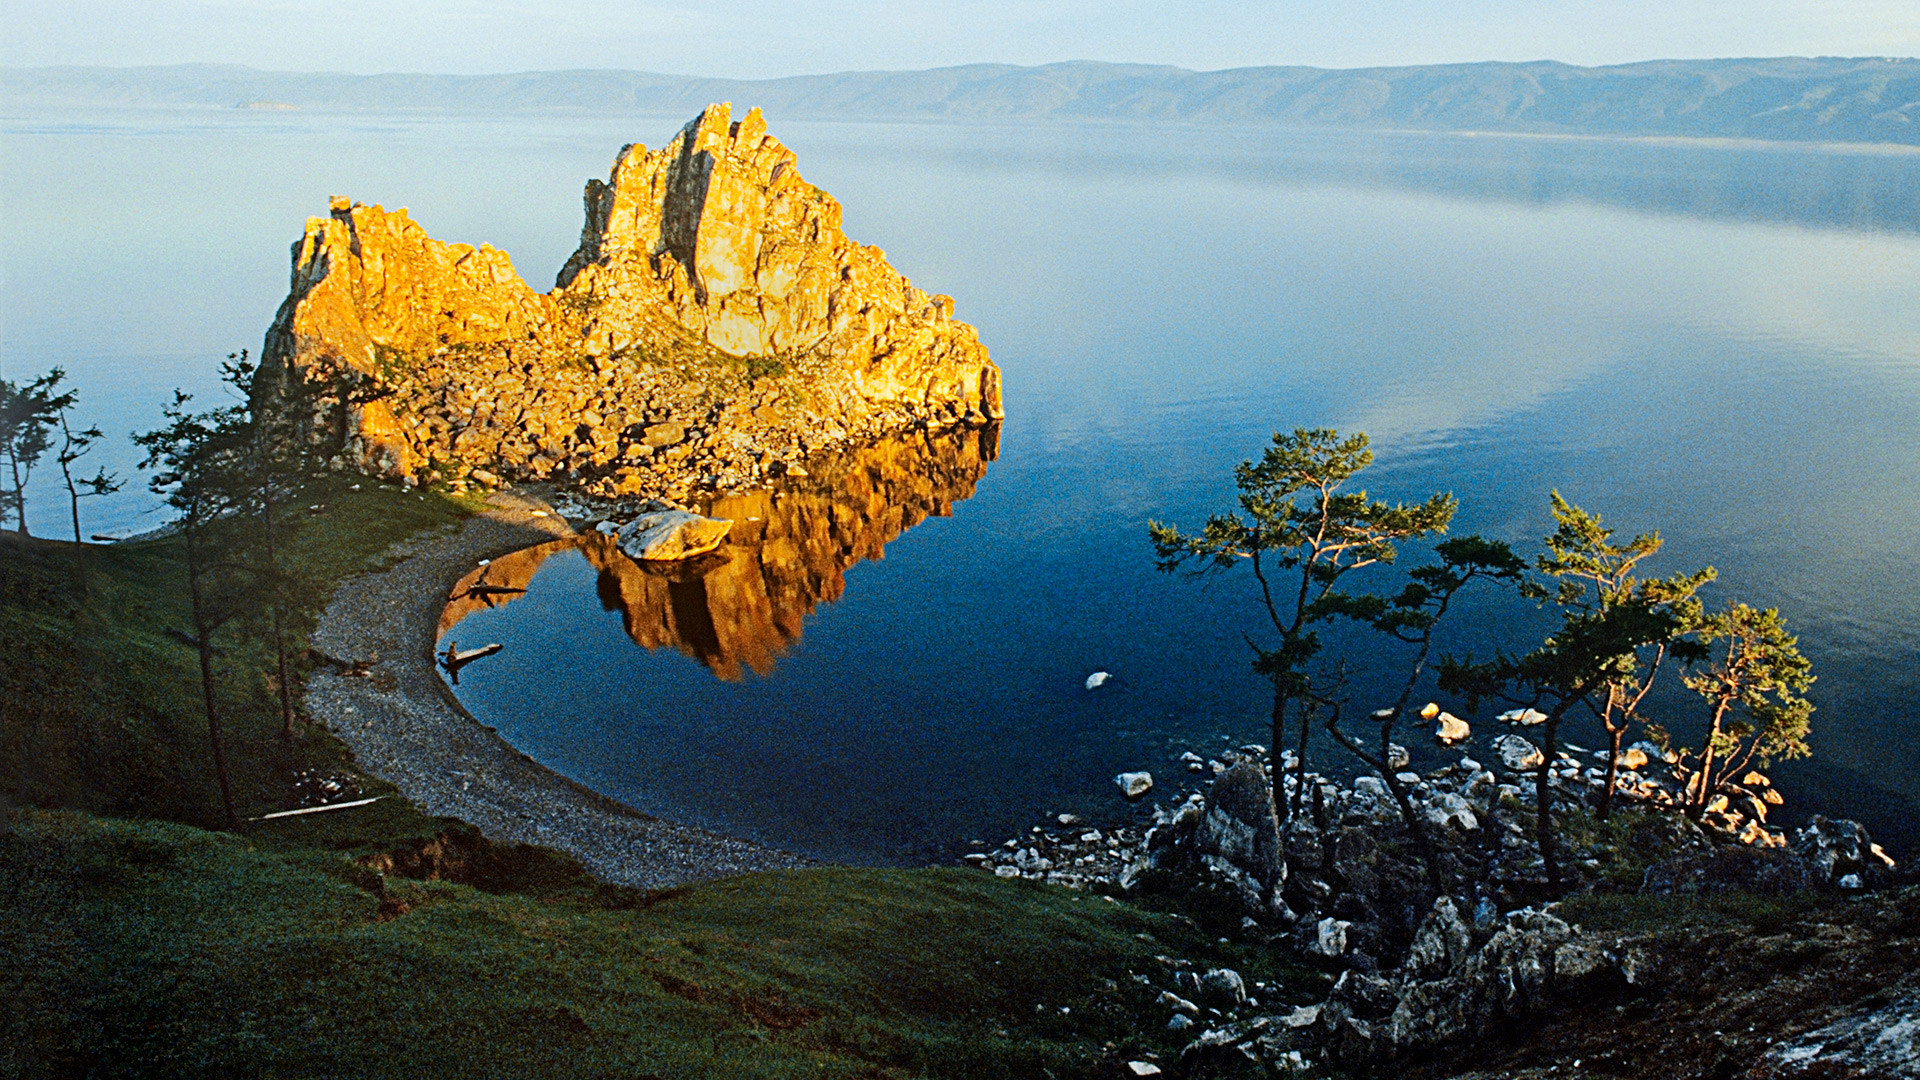 バイカル湖の歴史を物語る12枚の秘蔵写真 ロシア ビヨンド